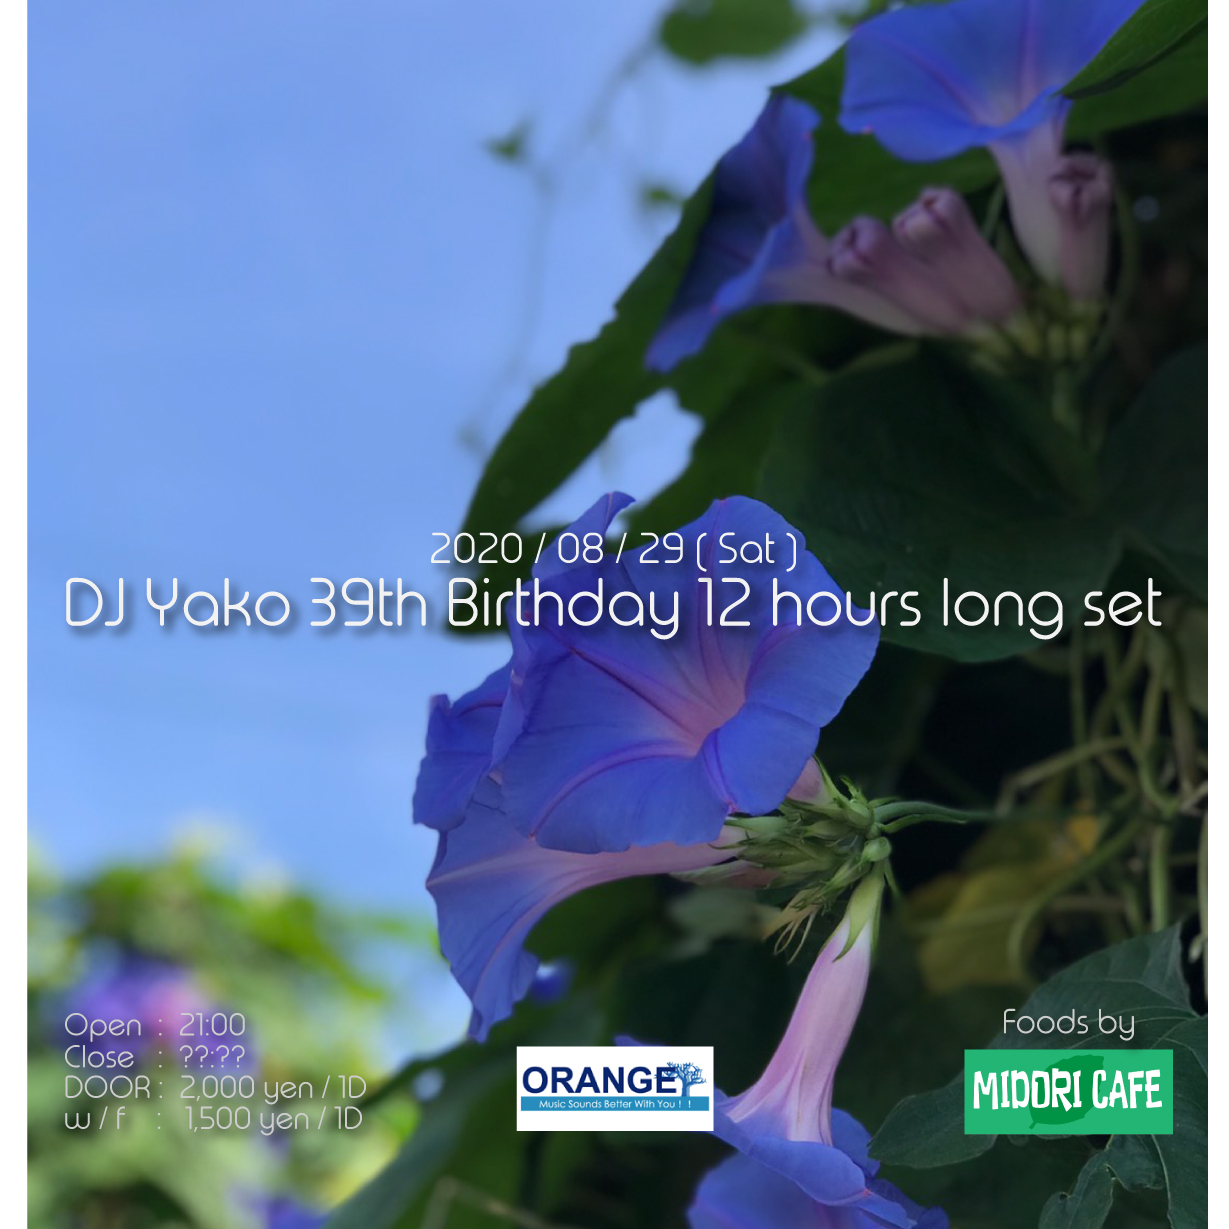 DJ Yako 39th Birthday 12 Hours Long Set